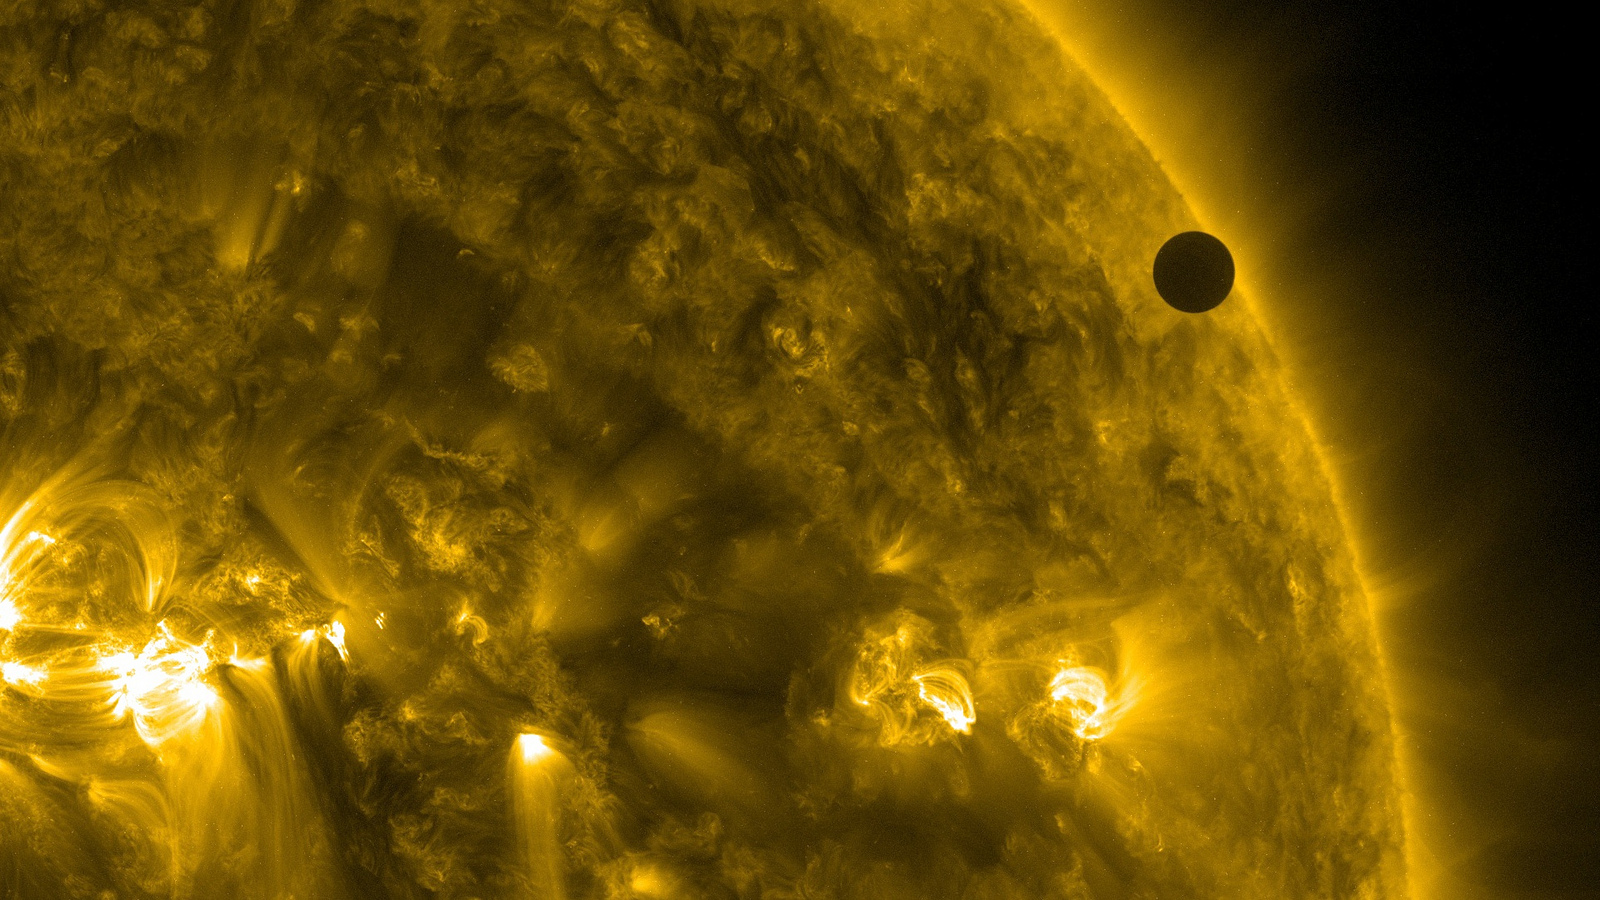 Vénus, ici de passage devant le Soleil, présente une période de rotation synodique (117 jours) largement&nbsp;inférieure à sa période de rotation sidérale (243 jours). © Nasa&nbsp;Goddard Space Flight Center, Flickr, CC by 2.0